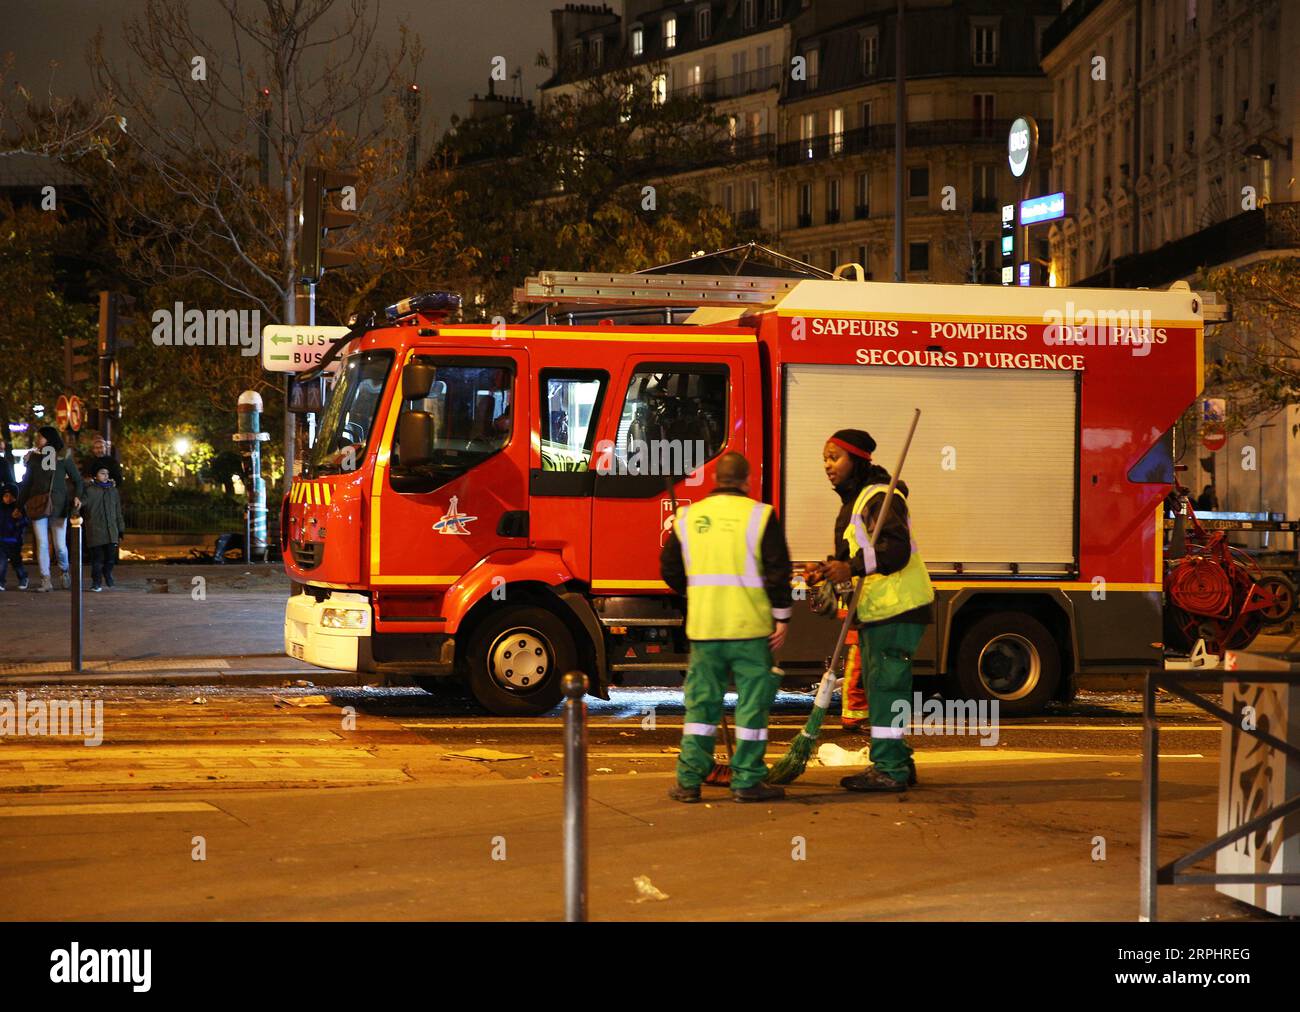 191117 -- PARIS, le 17 novembre 2019 -- des ouvriers nettoient la rue après la manifestation des gilets jaunes sur la place d Italie dans le 13e arrondissement, Paris, France, le 16 novembre 2019. La violence a éclaté samedi à Paris où le mouvement gilets jaunes a organisé une nouvelle action pour marquer son premier anniversaire dans un contexte de troubles sociaux continus sur les réformes économiques du président Emmanuel Macron. FRANCE-PARIS-GILET JAUNE ANNIVERSAIRE GaoxJing PUBLICATIONxNOTxINxCHN Banque D'Images